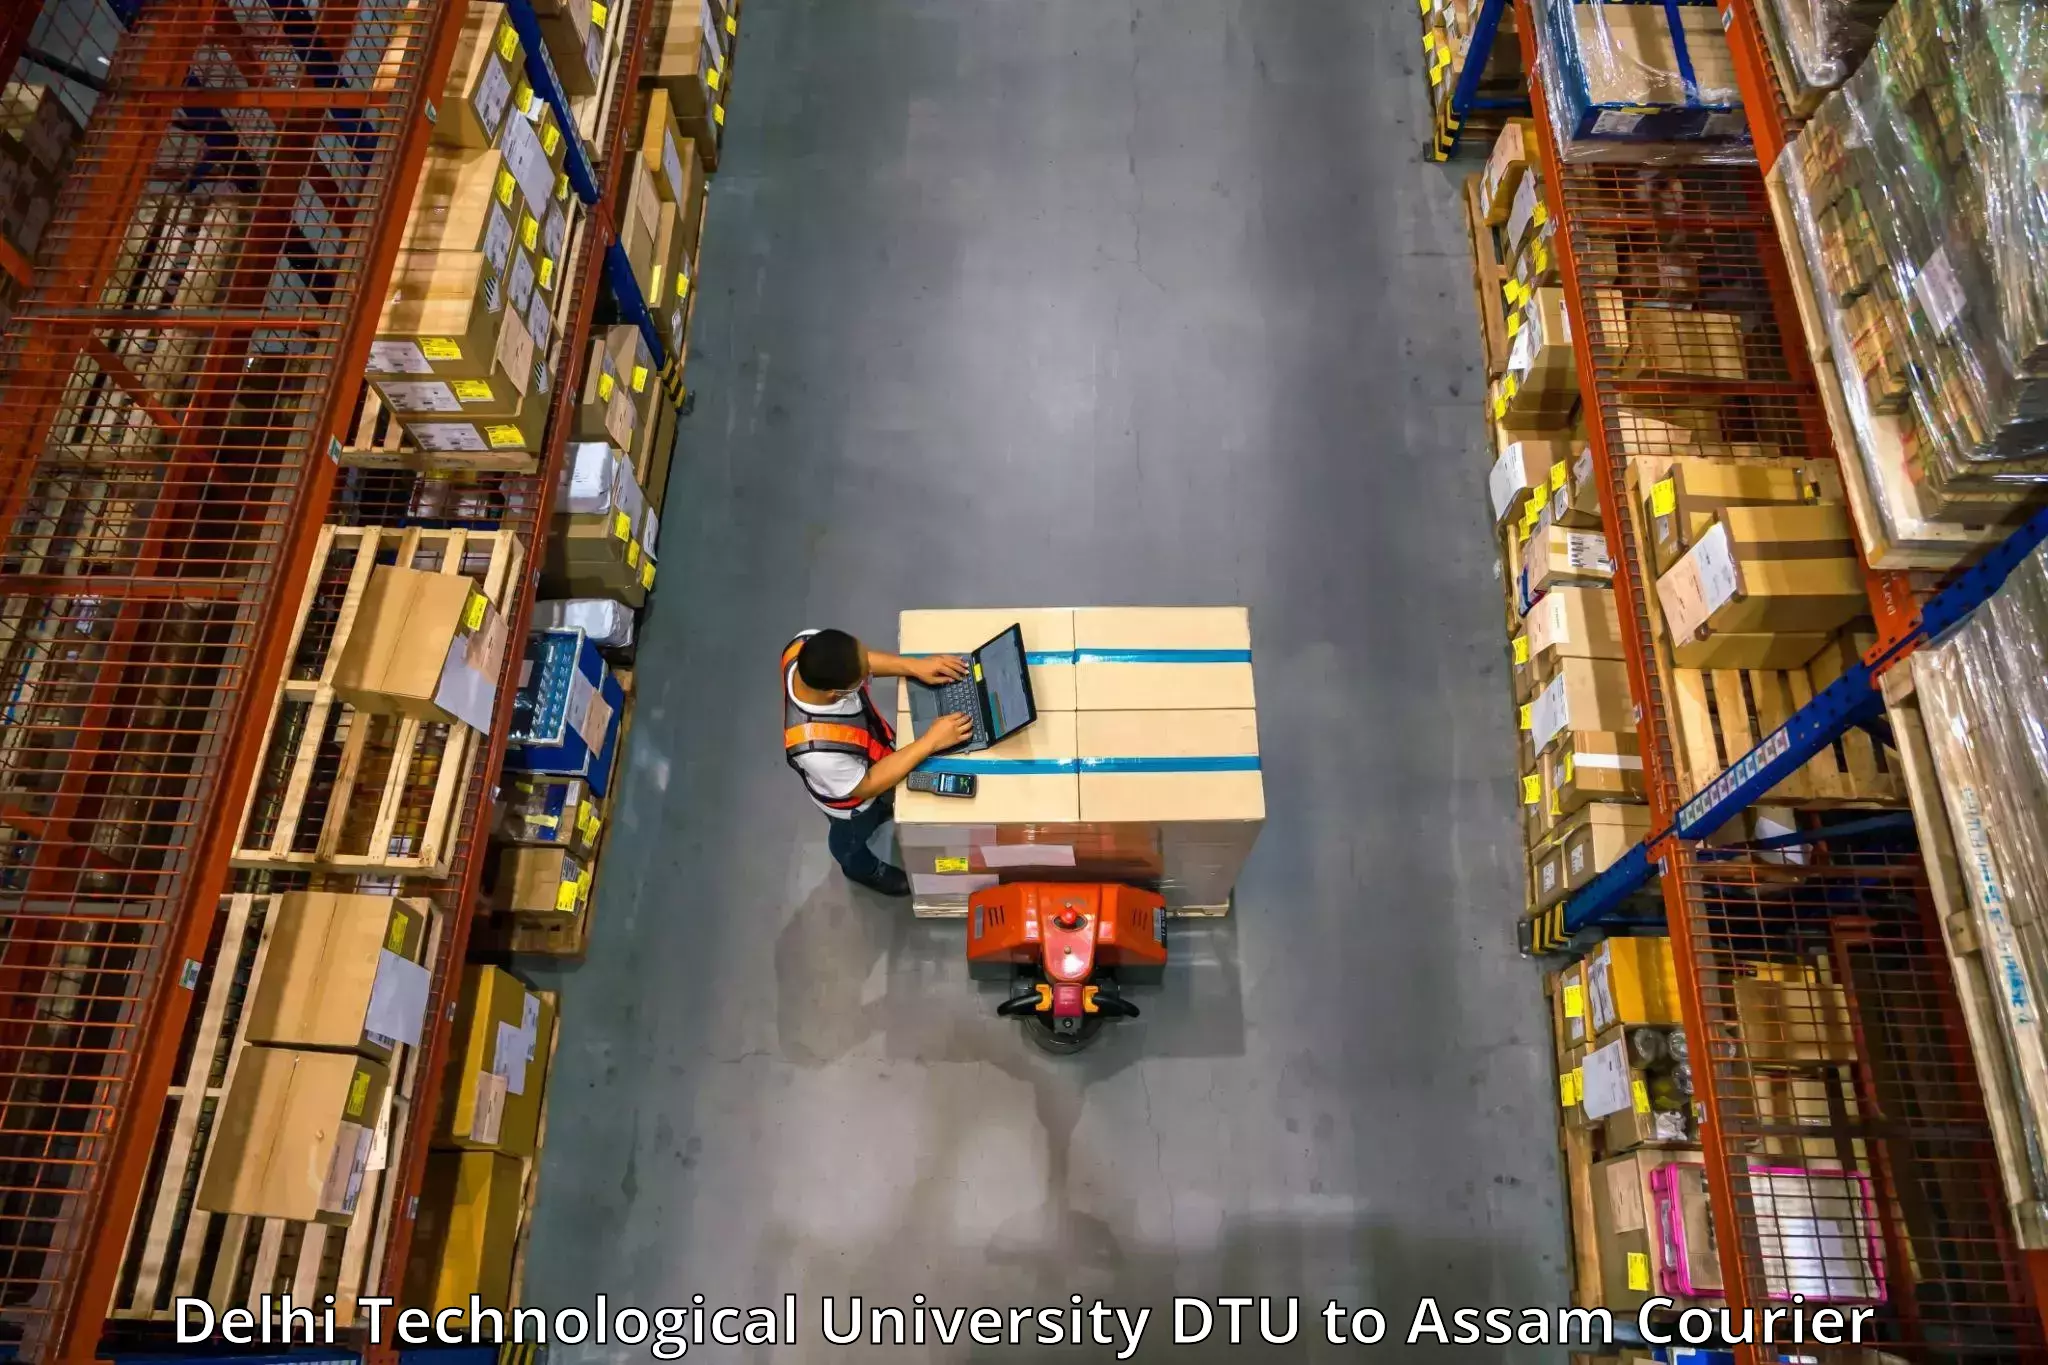 Furniture transport services Delhi Technological University DTU to Dibrugarh